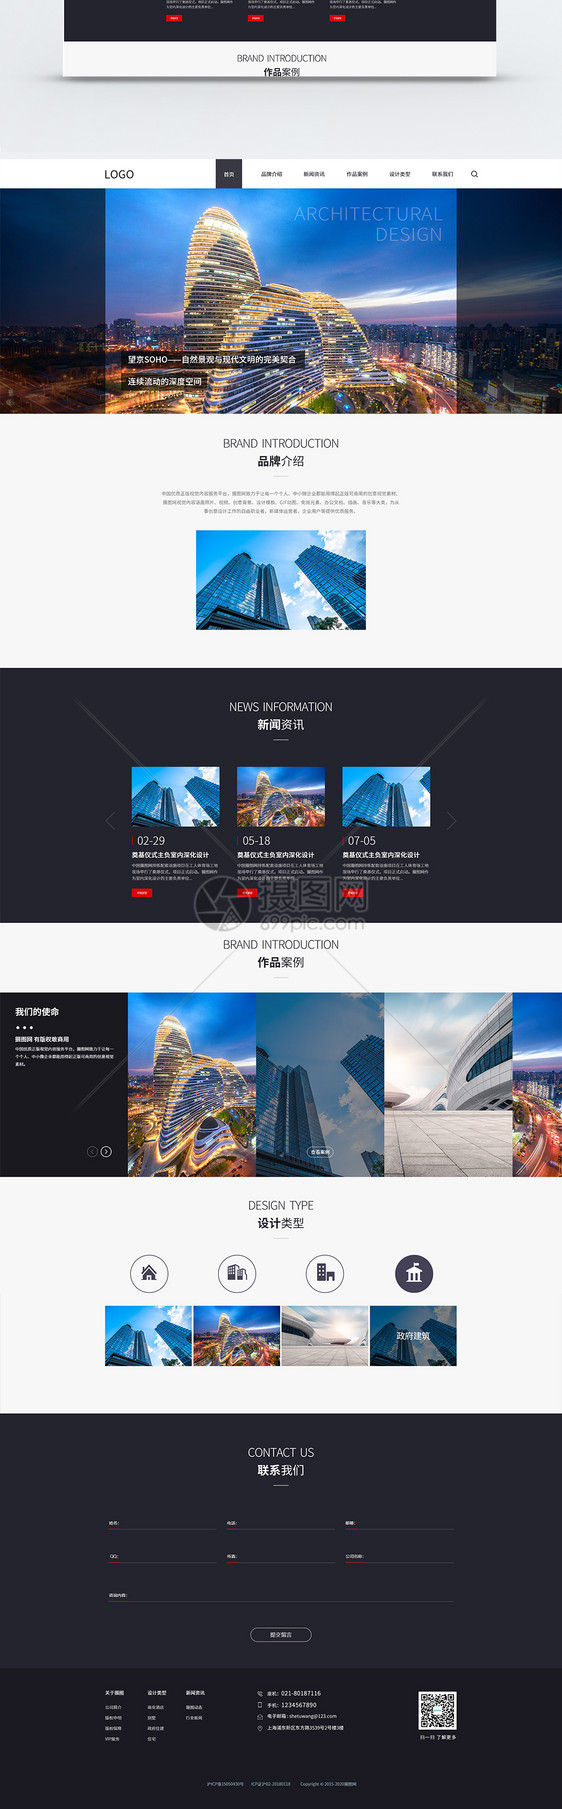 建筑设计网站官网UI设计web界面图片